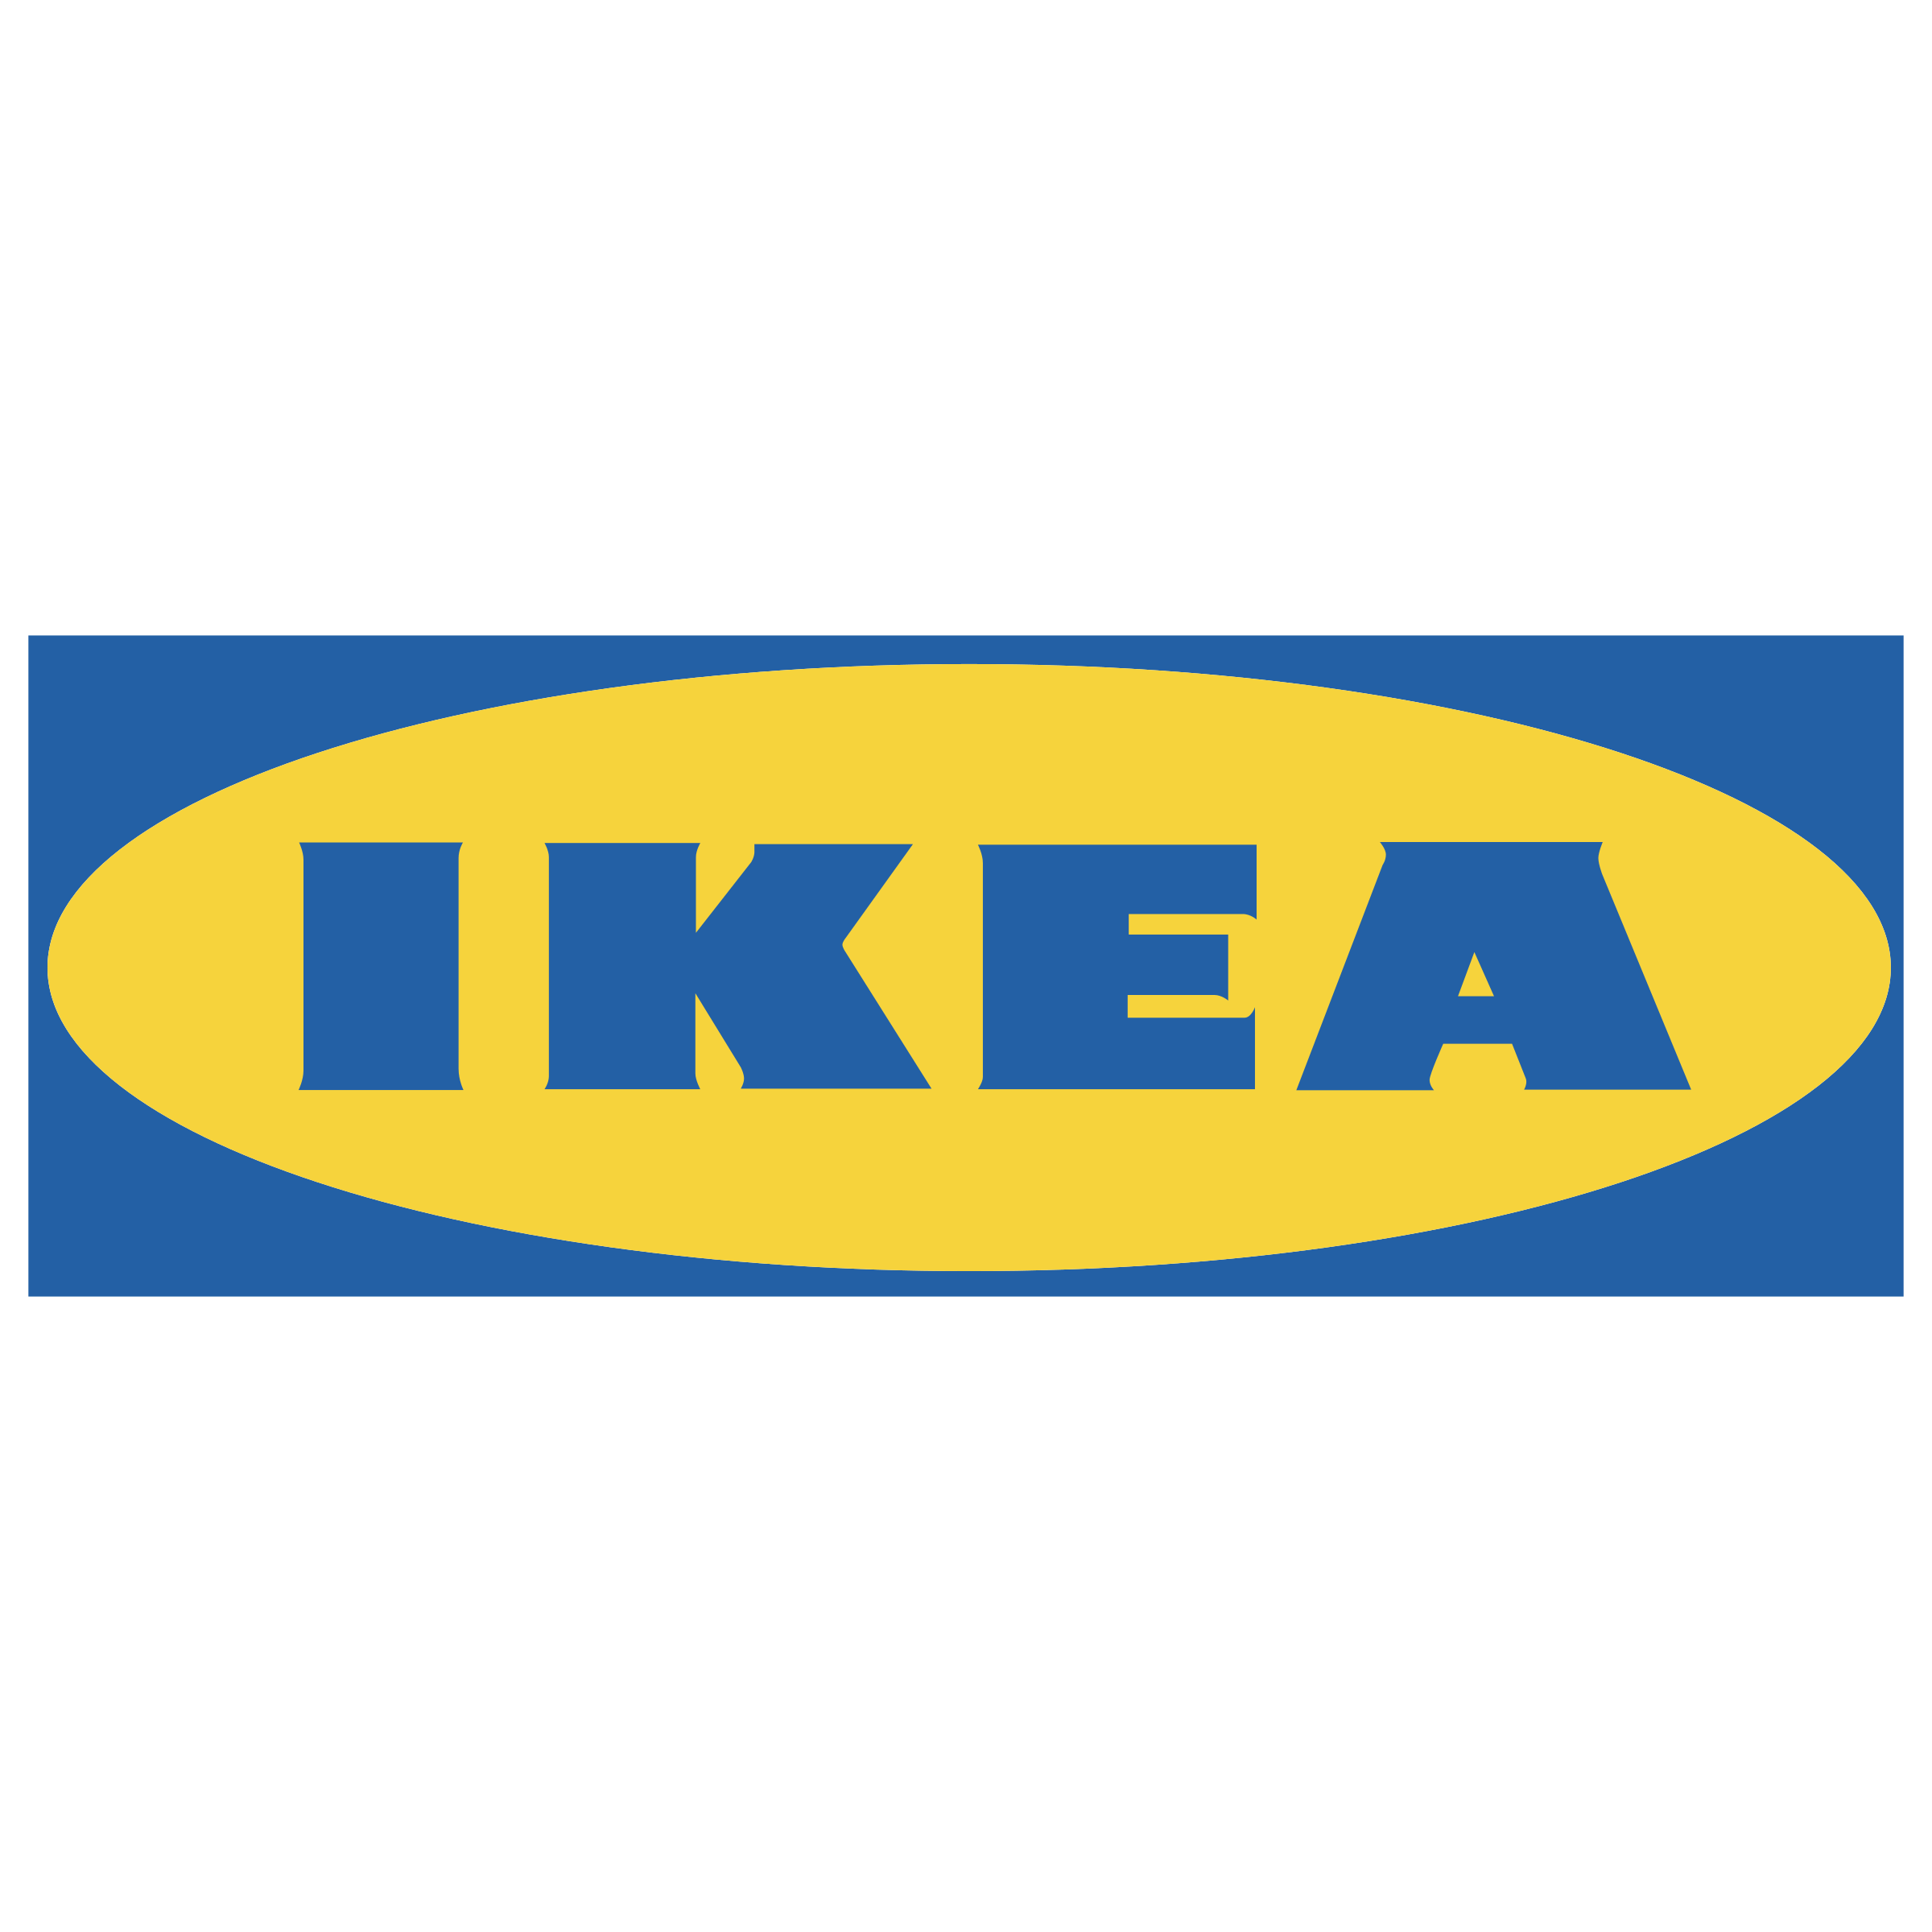 Ikea.com Logo - Ikea Logo PNG Transparent & SVG Vector - Freebie Supply